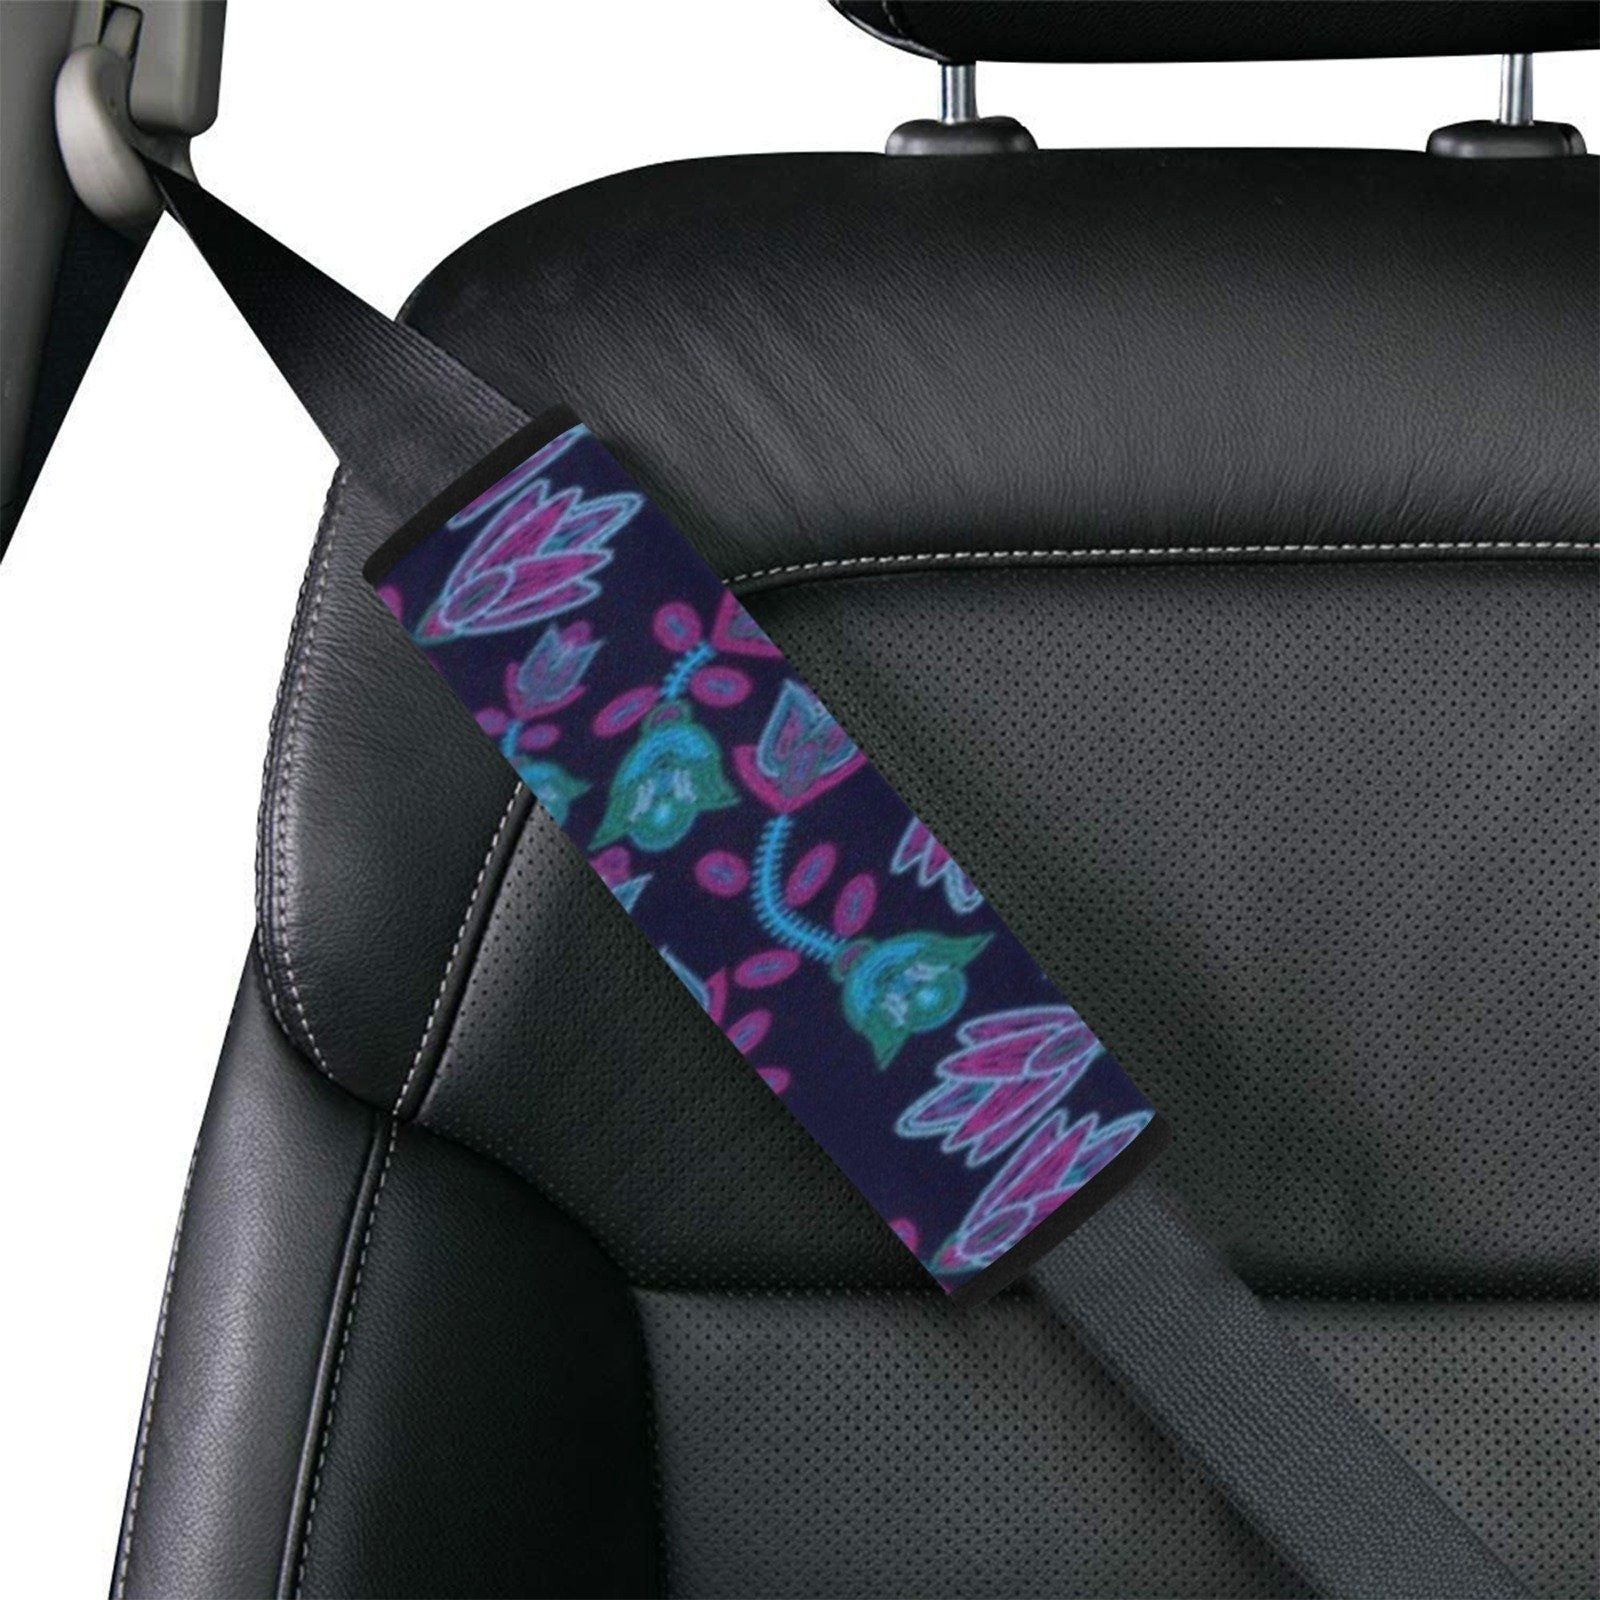 Beaded Blue Nouveau Car Seat Belt Cover 7''x12.6'' (Pack of 2) Car Seat Belt Cover 7x12.6 (Pack of 2) e-joyer 